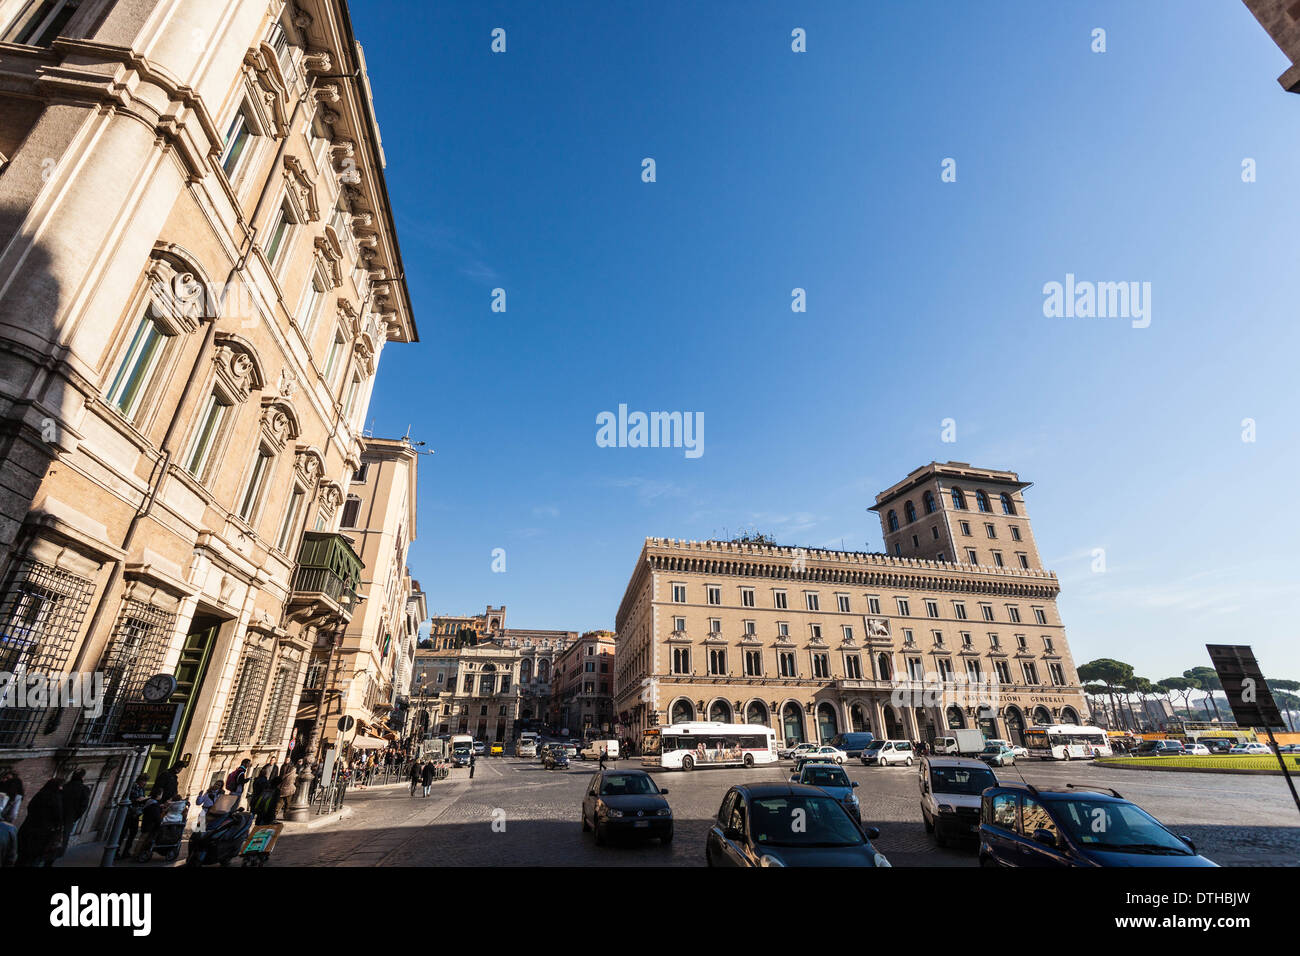 La Piazza Venezia, Rome, Italie Banque D'Images